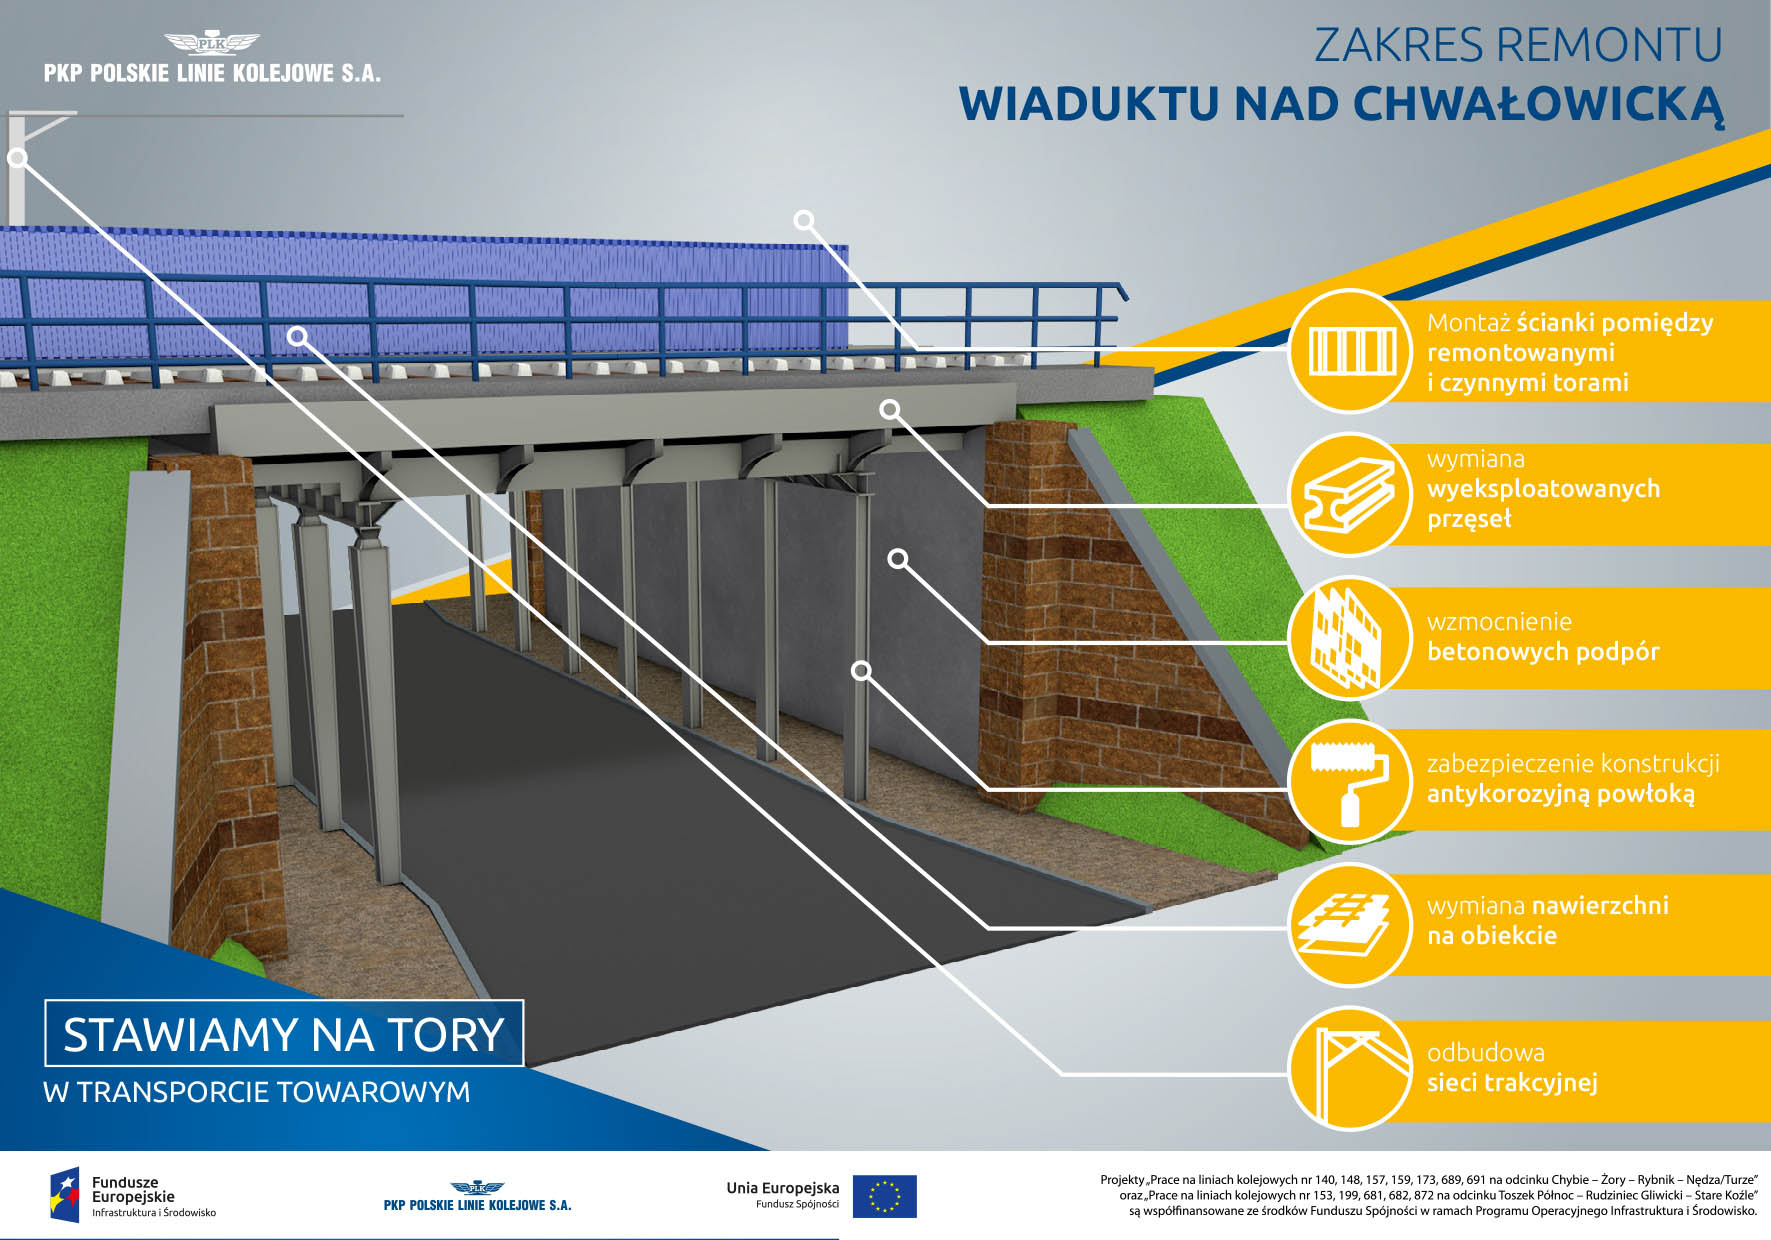 Infografika mówi o zakresie prac na wiadukcie nad Chwałowicką w Rybniku. Obejmuje on: montaż ścianki między torami, wymianę przęseł, wzmocnienie betonowych podpór, nałożenie powłoki antykorozyjnej, wymianę nawierzchni, odbudowę sieci trakcyjnej.